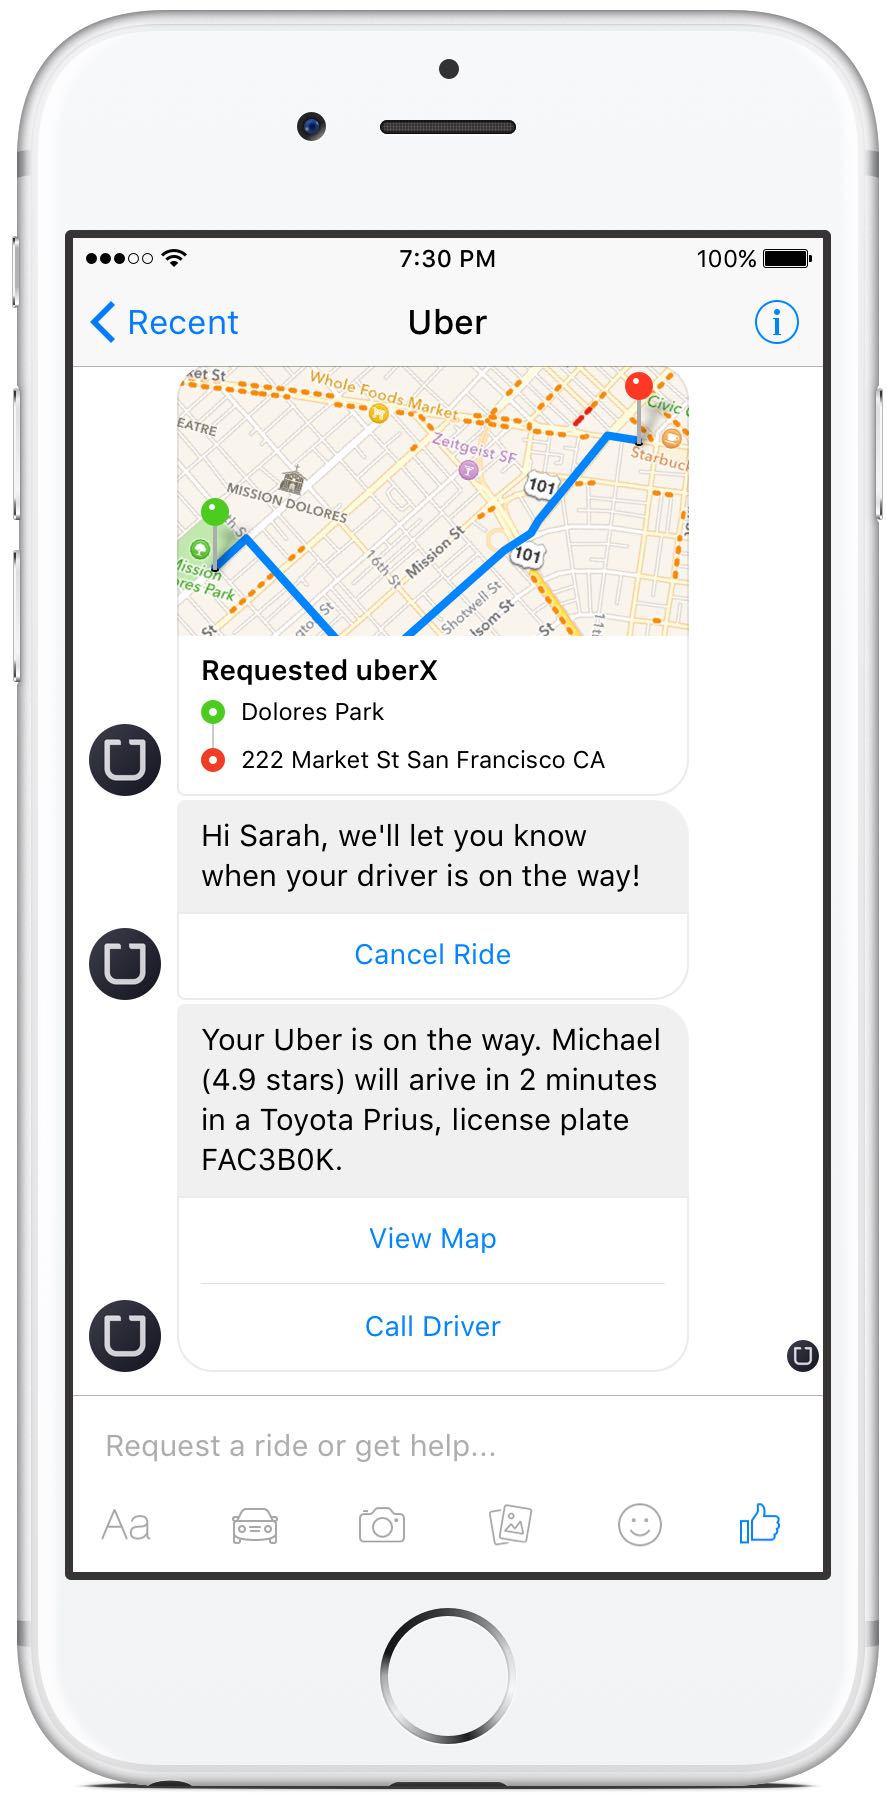 Facebook Messenger Uber integration iPhone screenshot 002